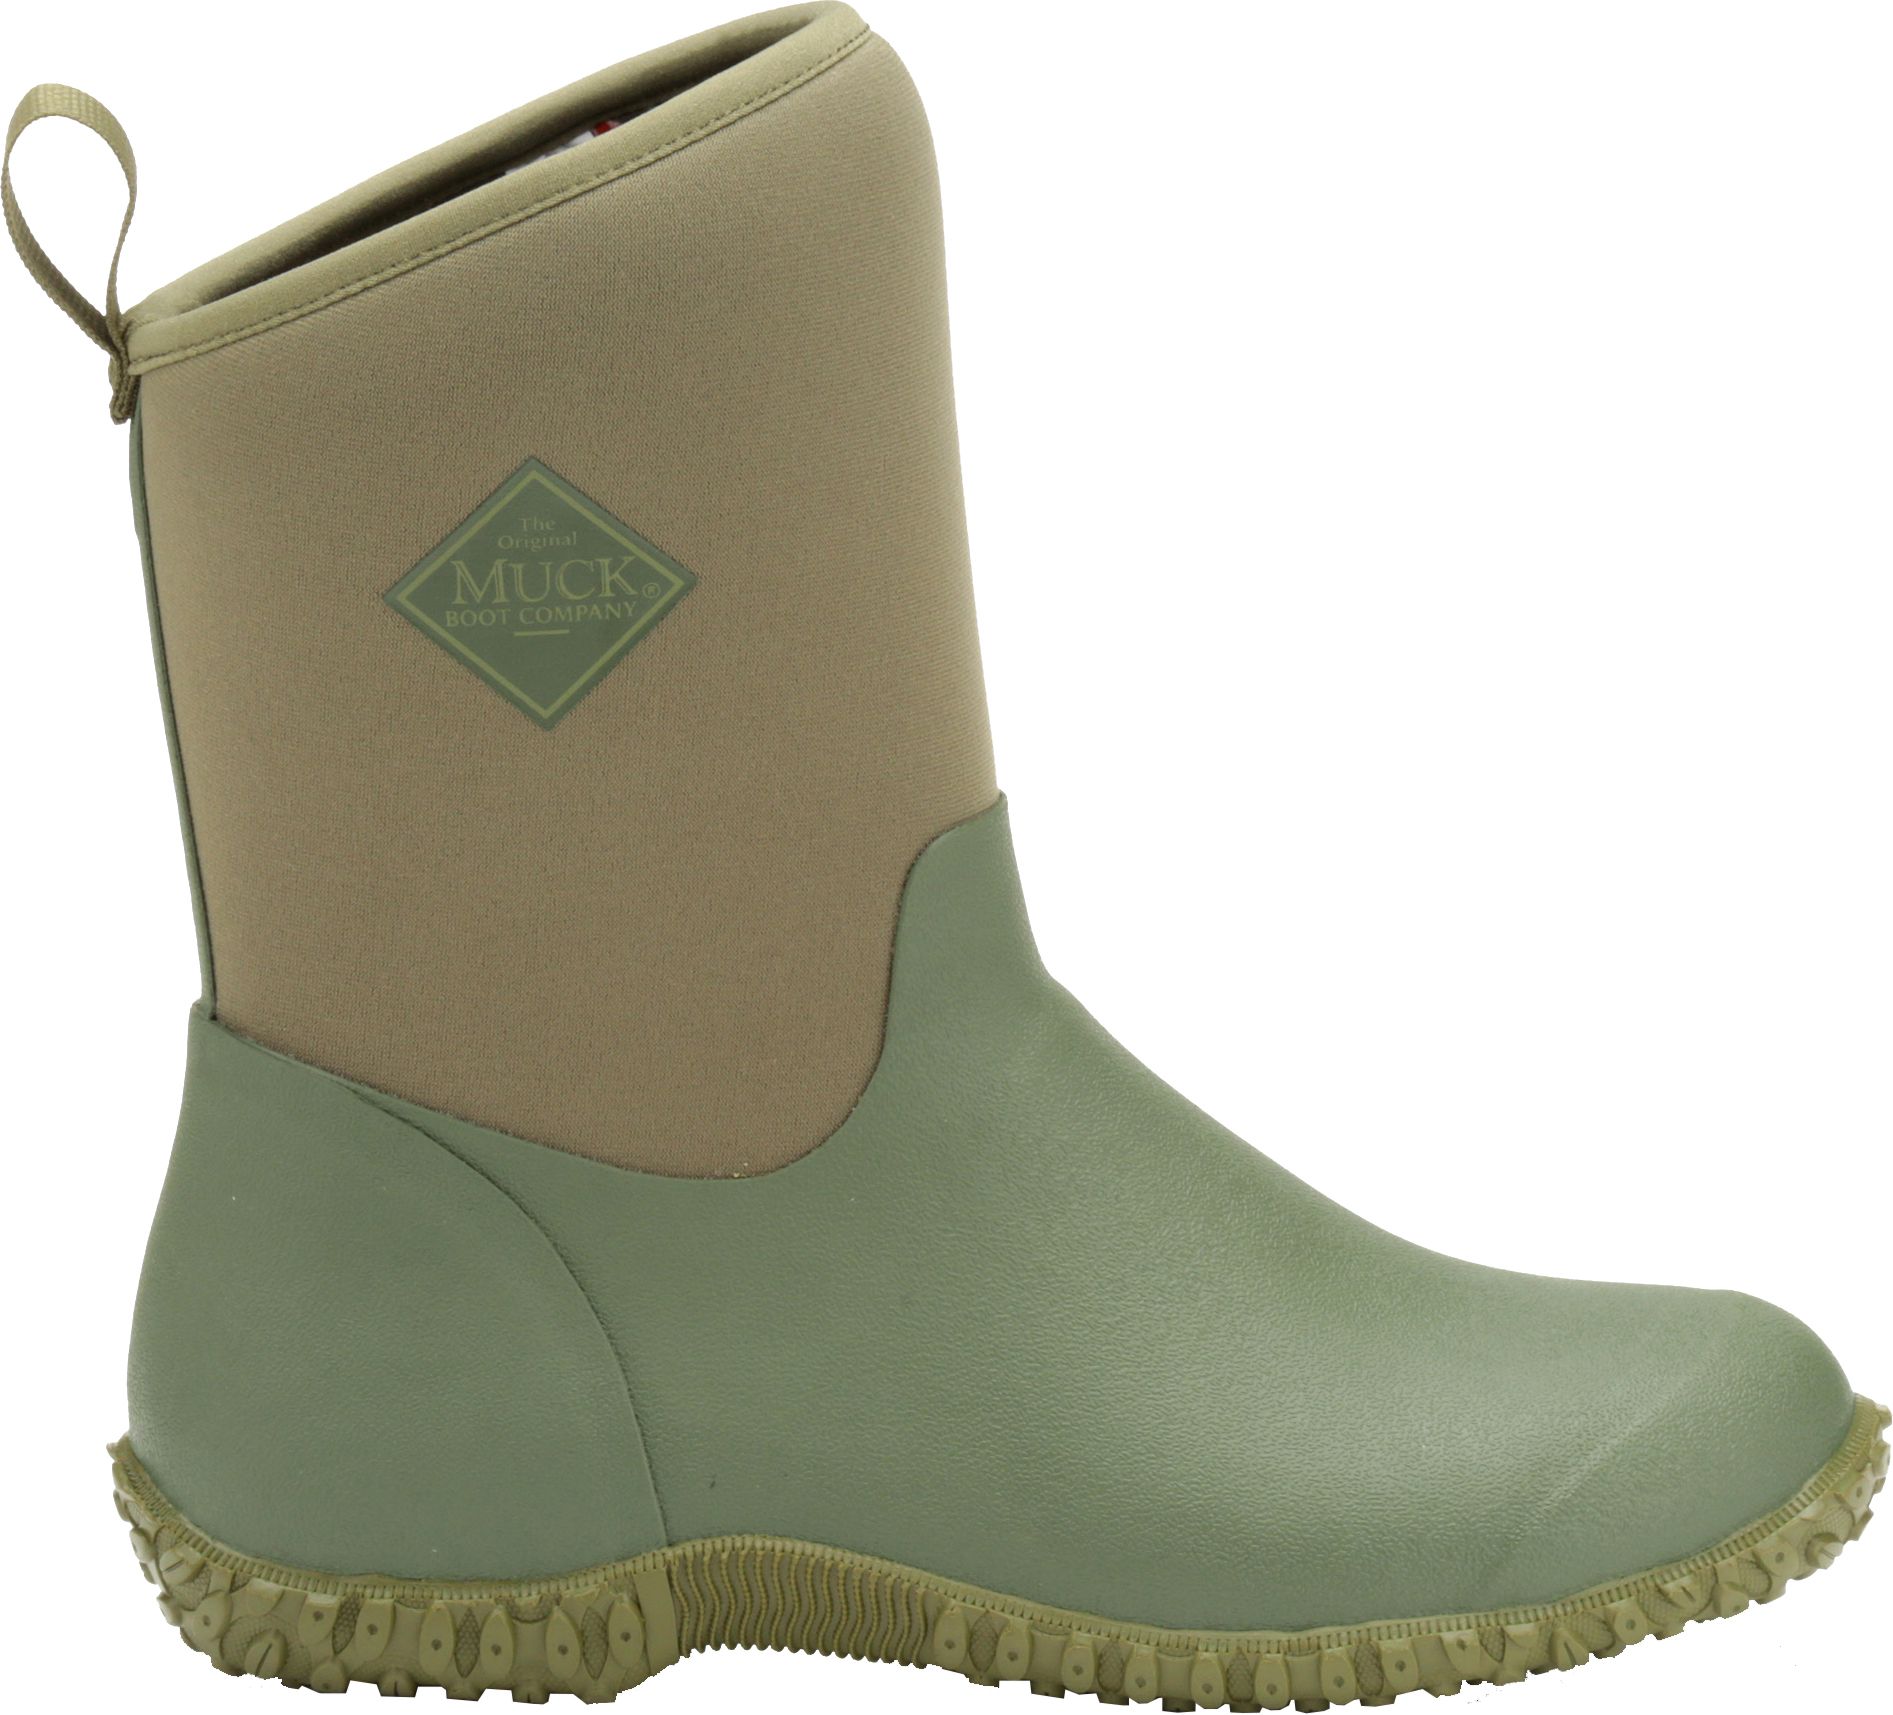 women's low rise rain boots